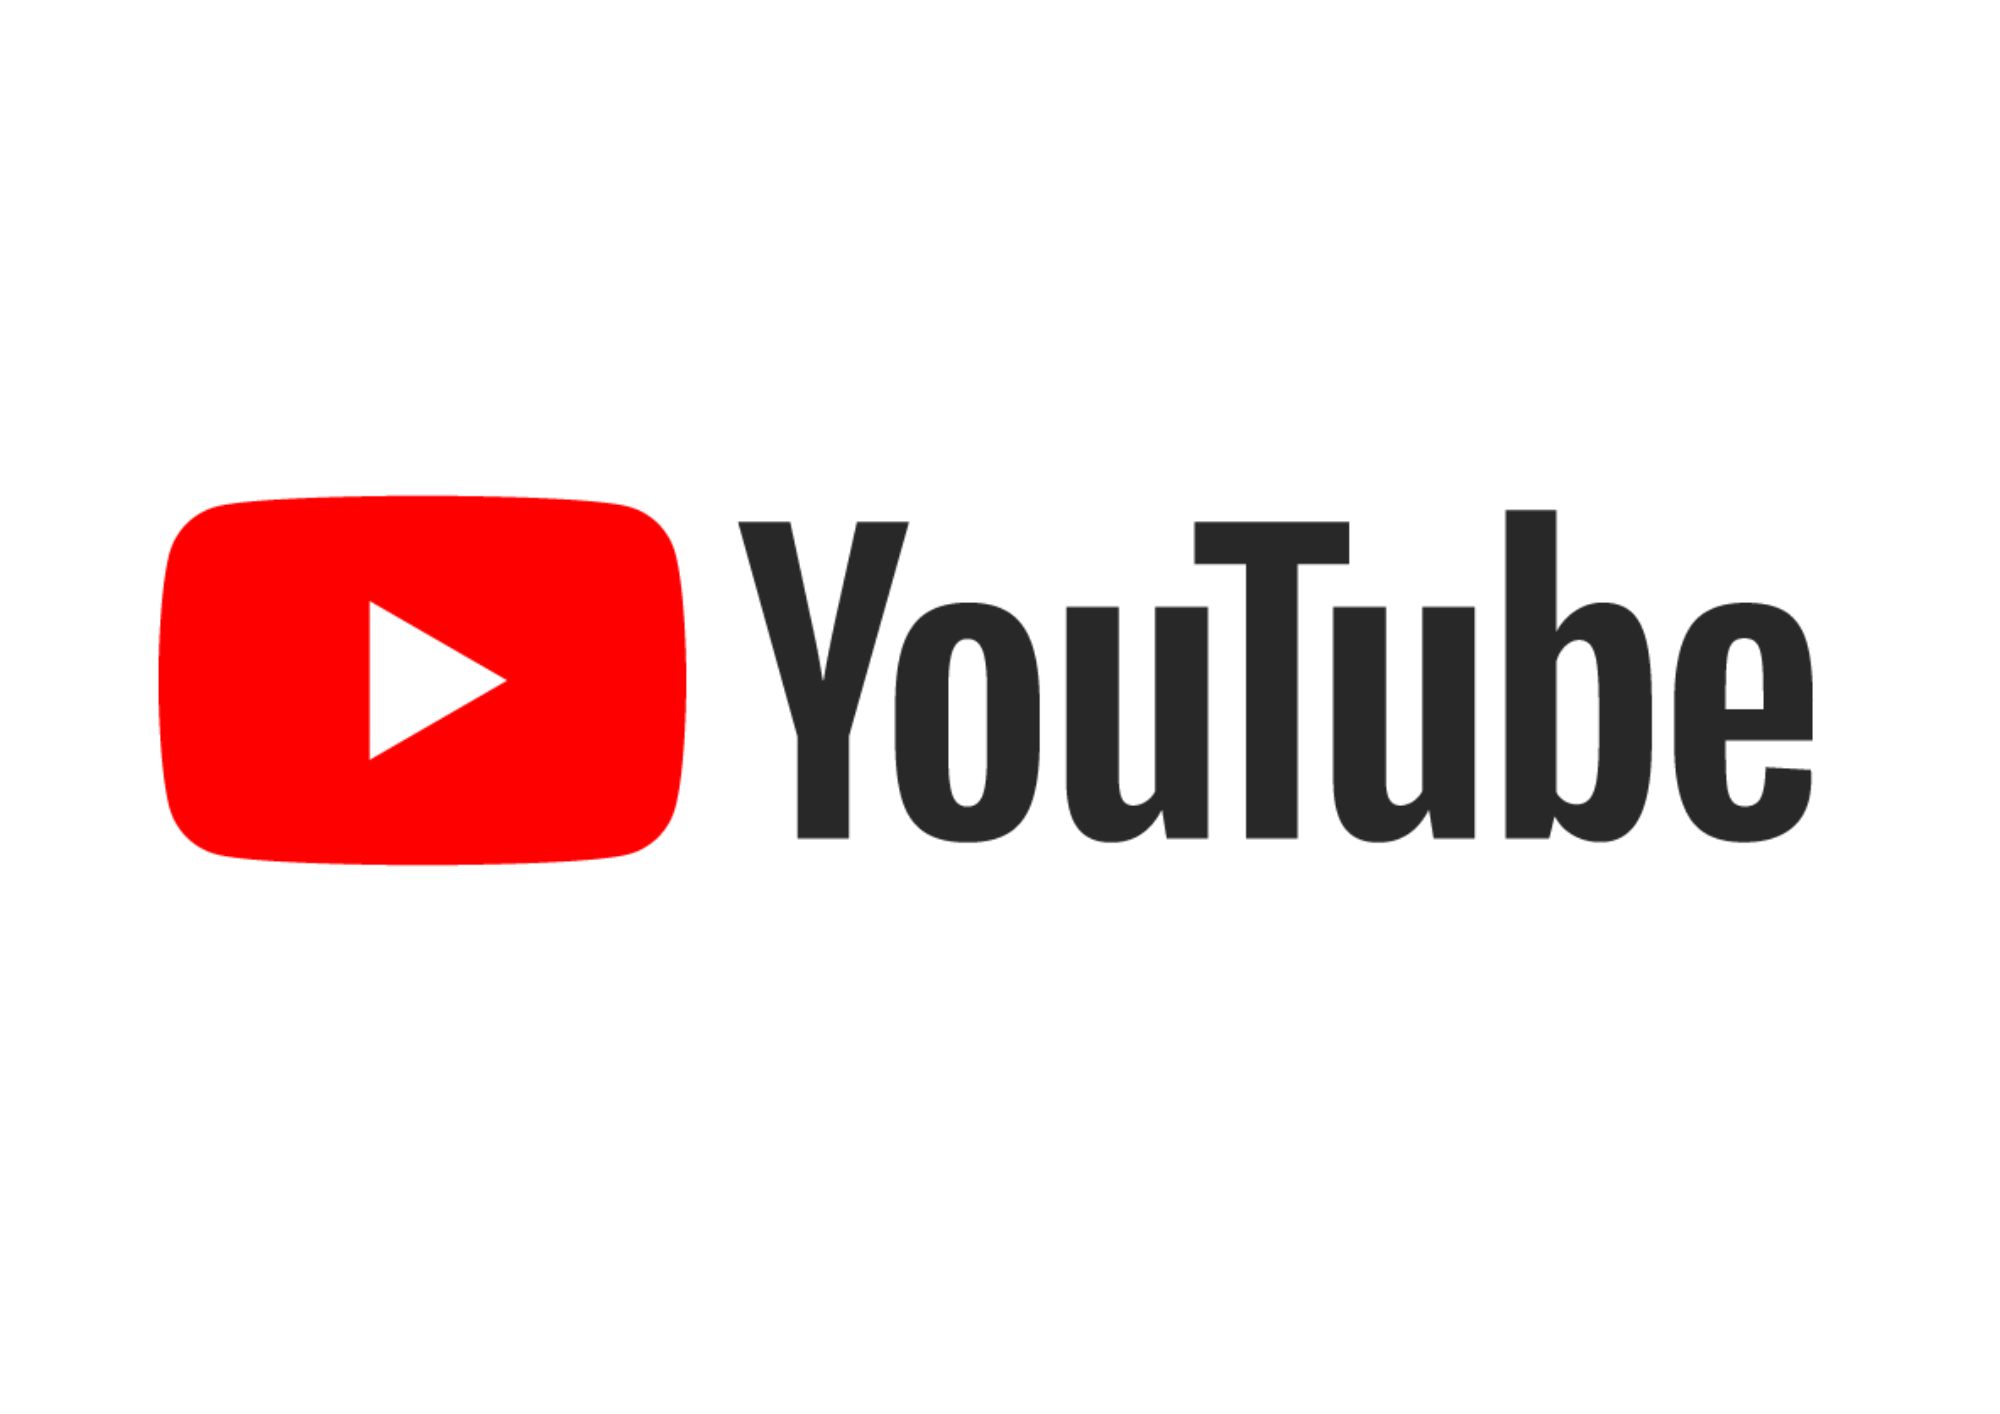 YouTube Ka Full Form Kya Hai | Full Form Of YouTube In Hindi